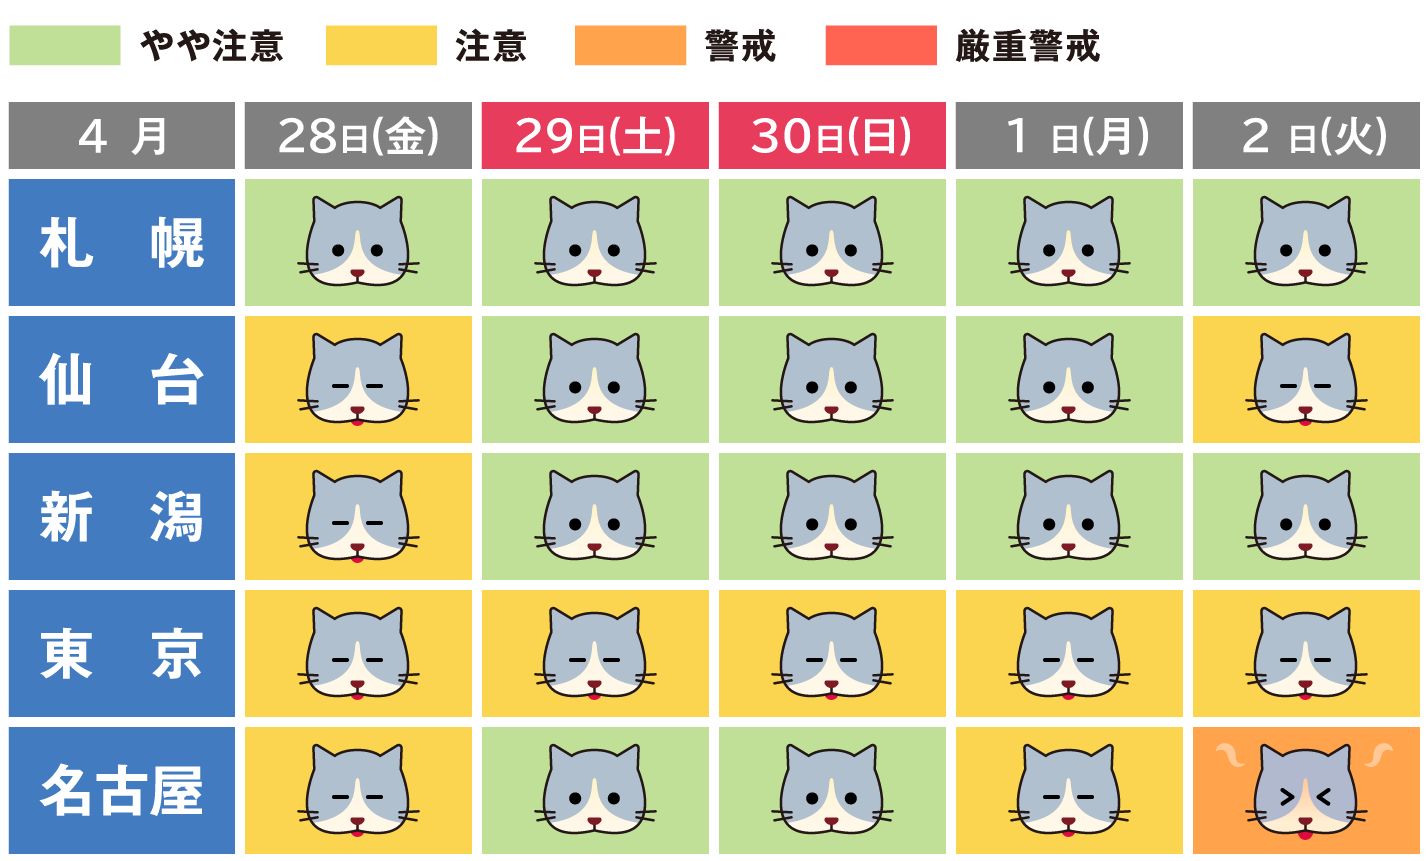 猫の表情で熱中症の危険度が分かる「猫の熱中症週間予報」ビジュアルイメージ